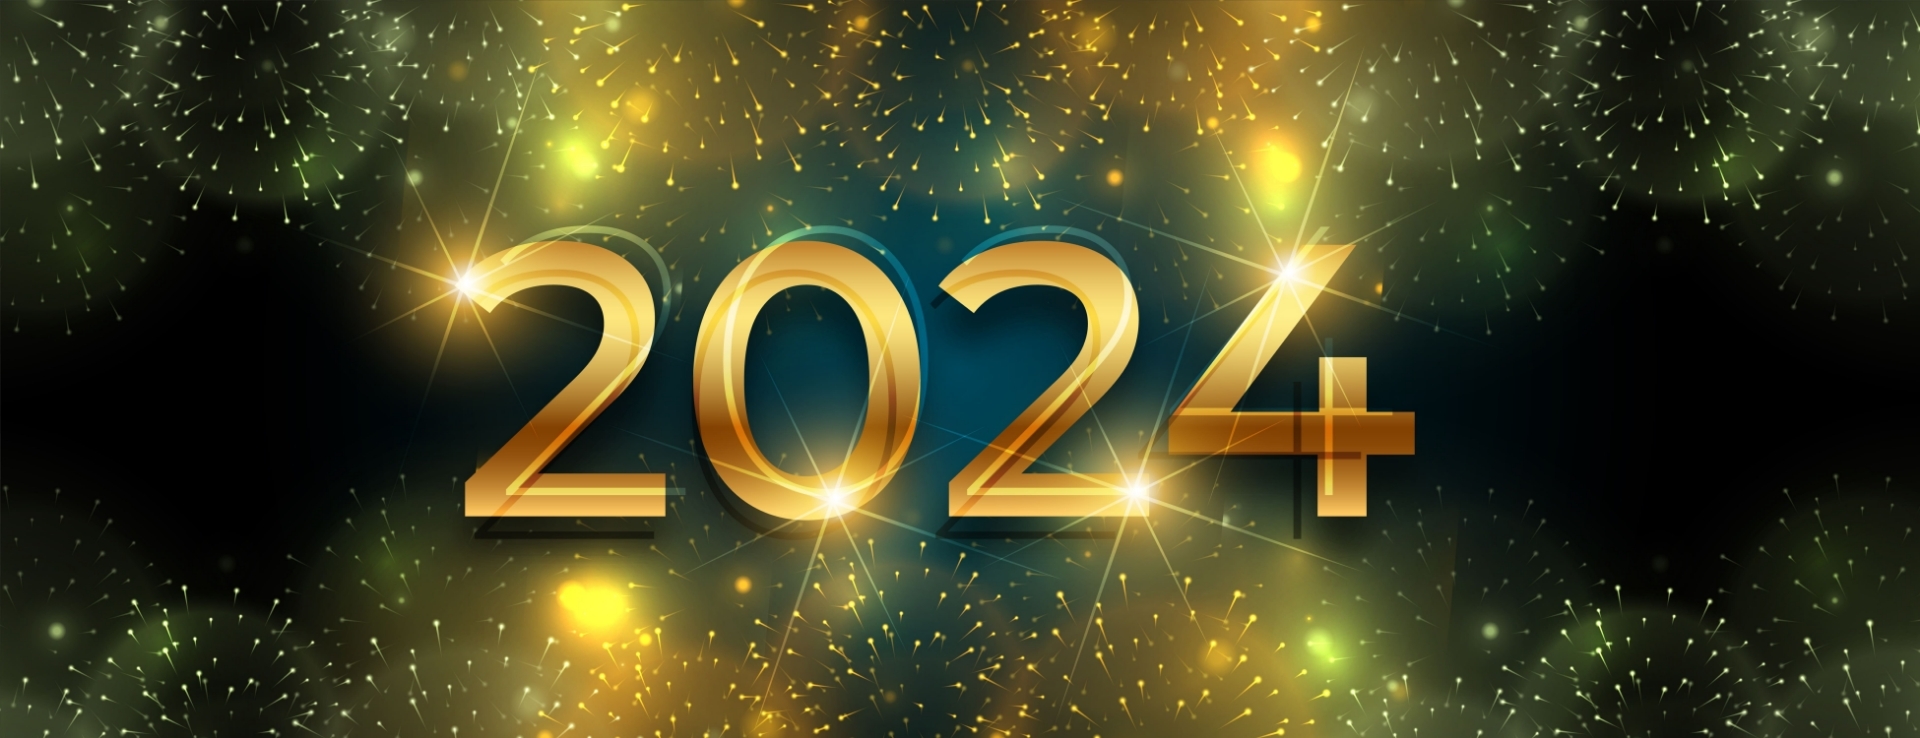 Espaços externos renovados: tendências para 2024